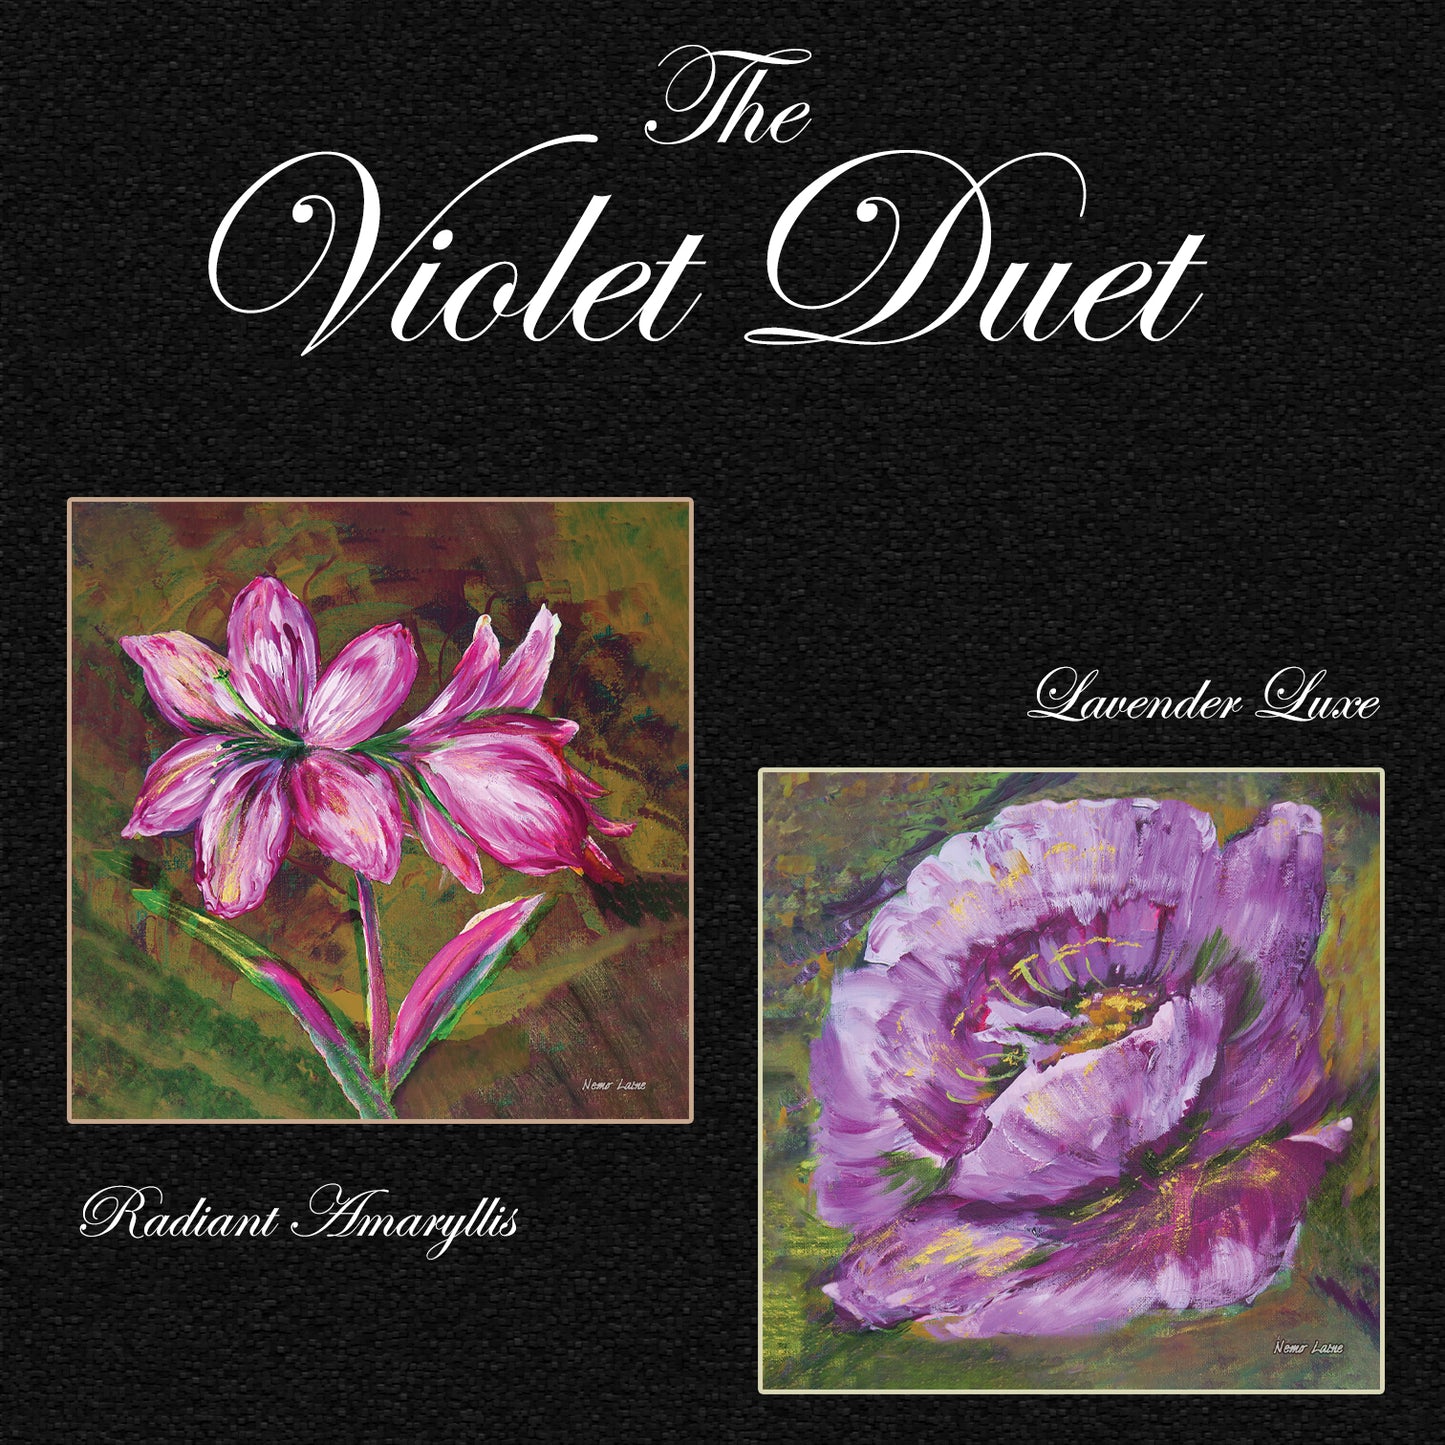 The Violet Duet